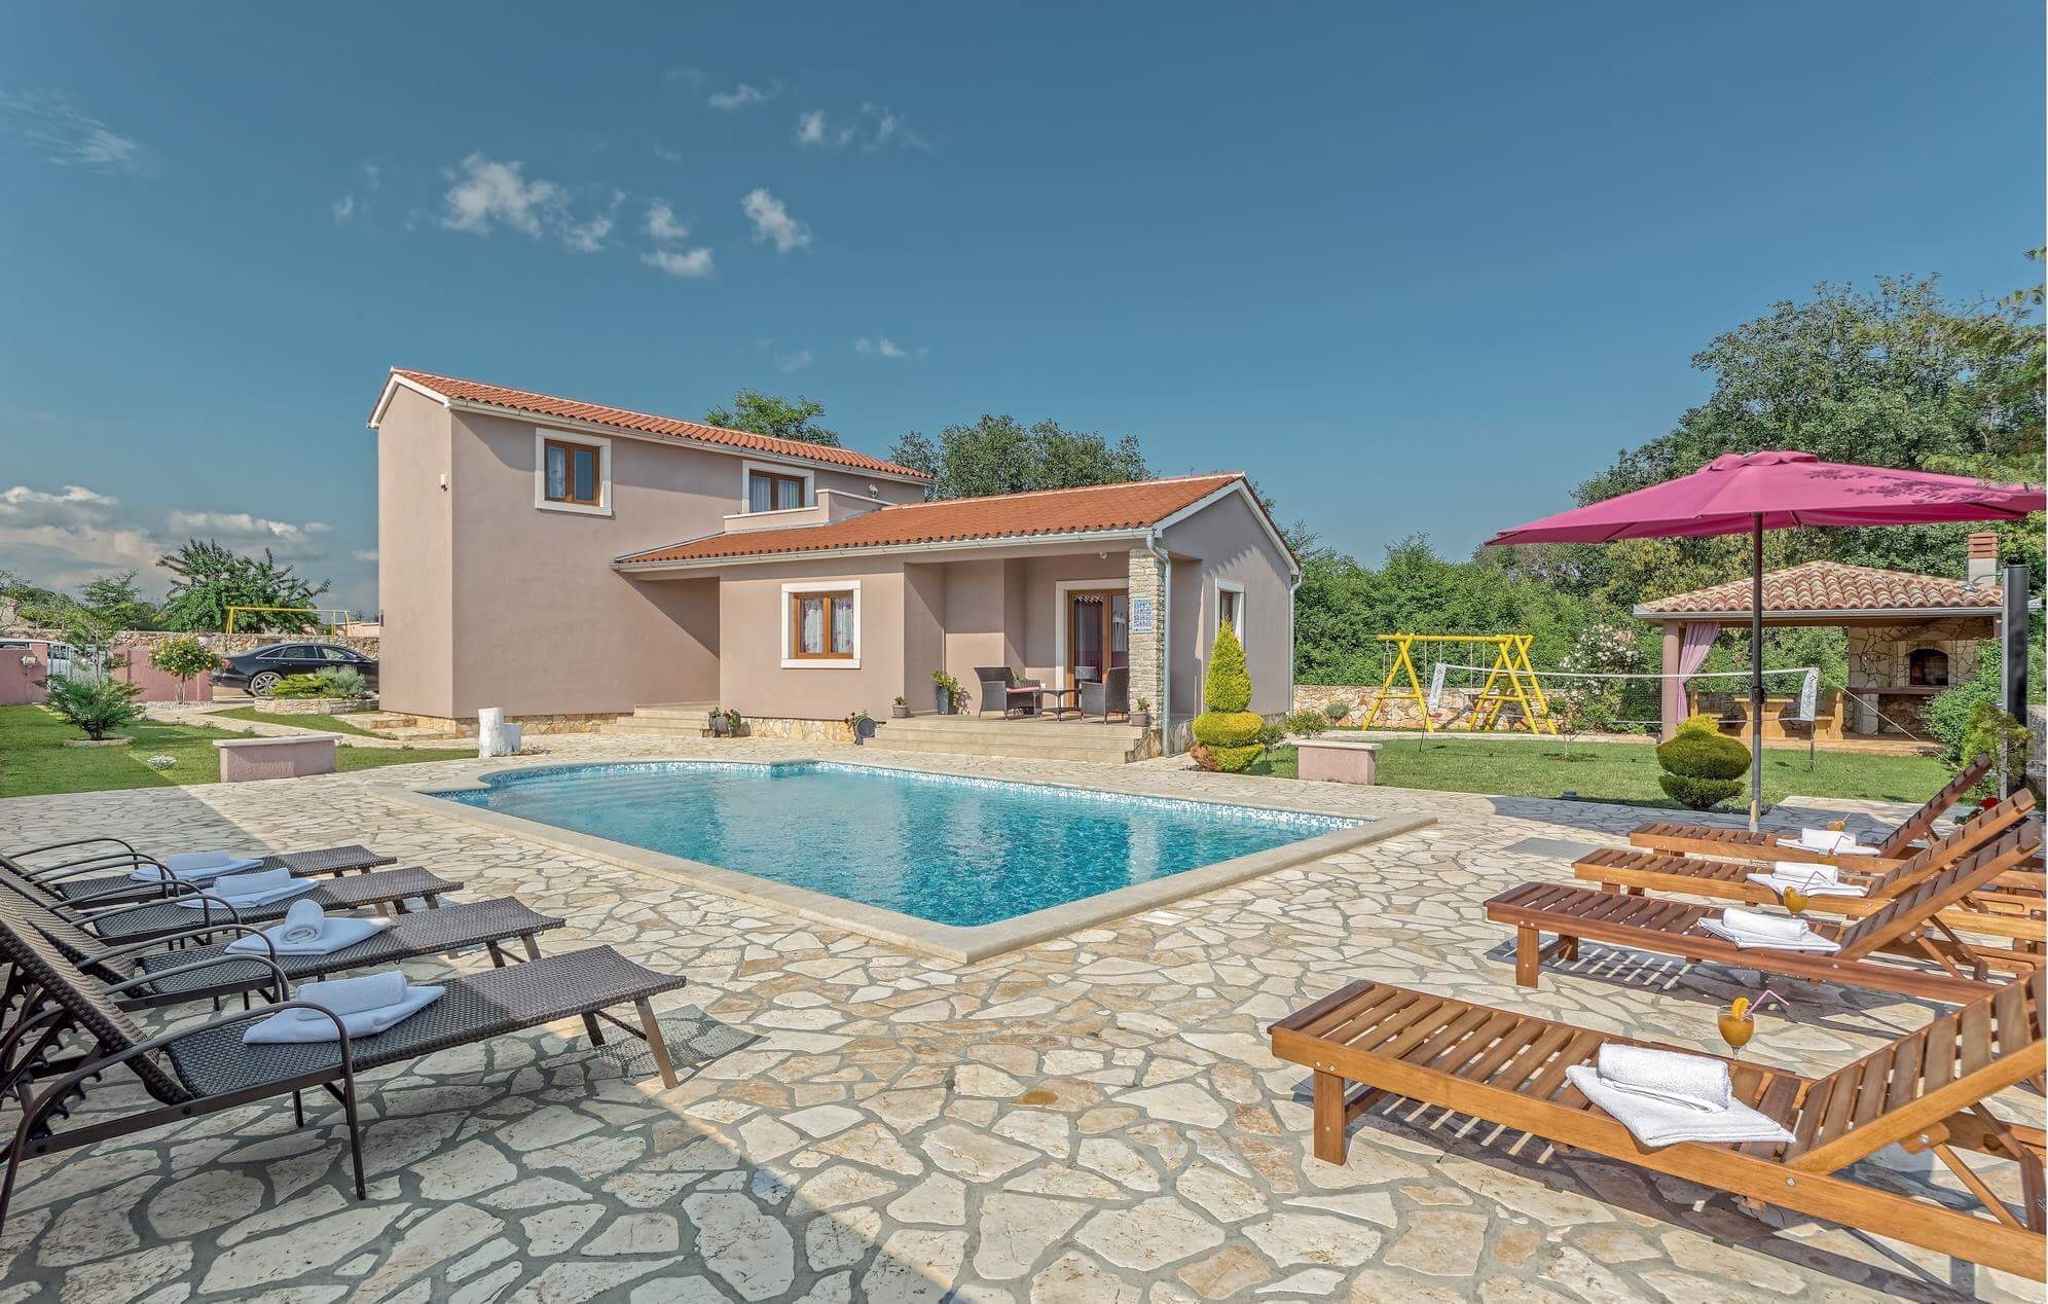 Ferienhaus mit Pool und Garten Ferienhaus in Kroatien